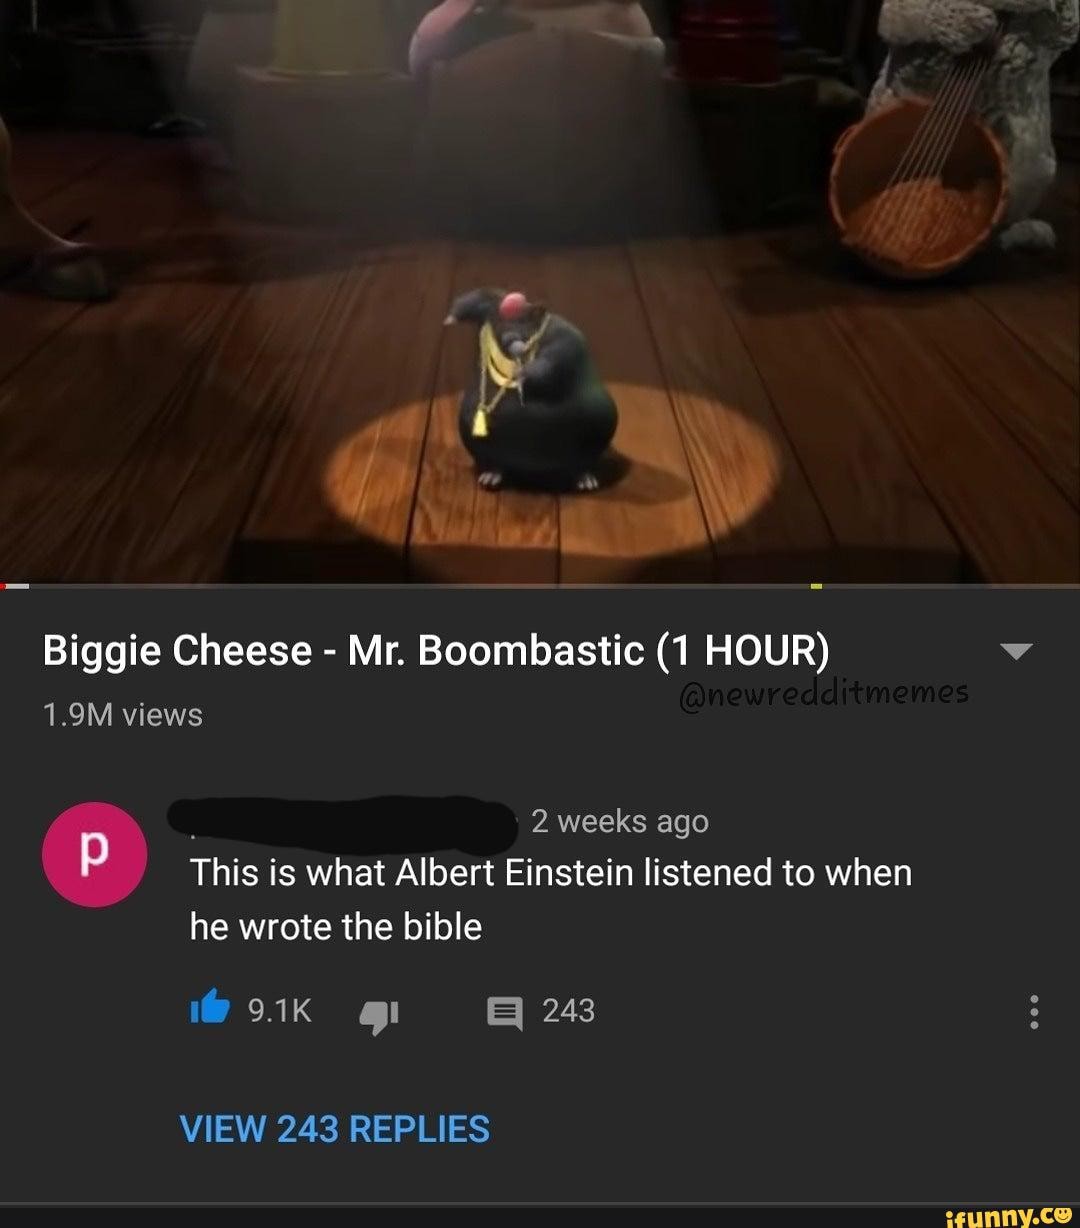 Biggie Cheese - Mr. Boombastic 